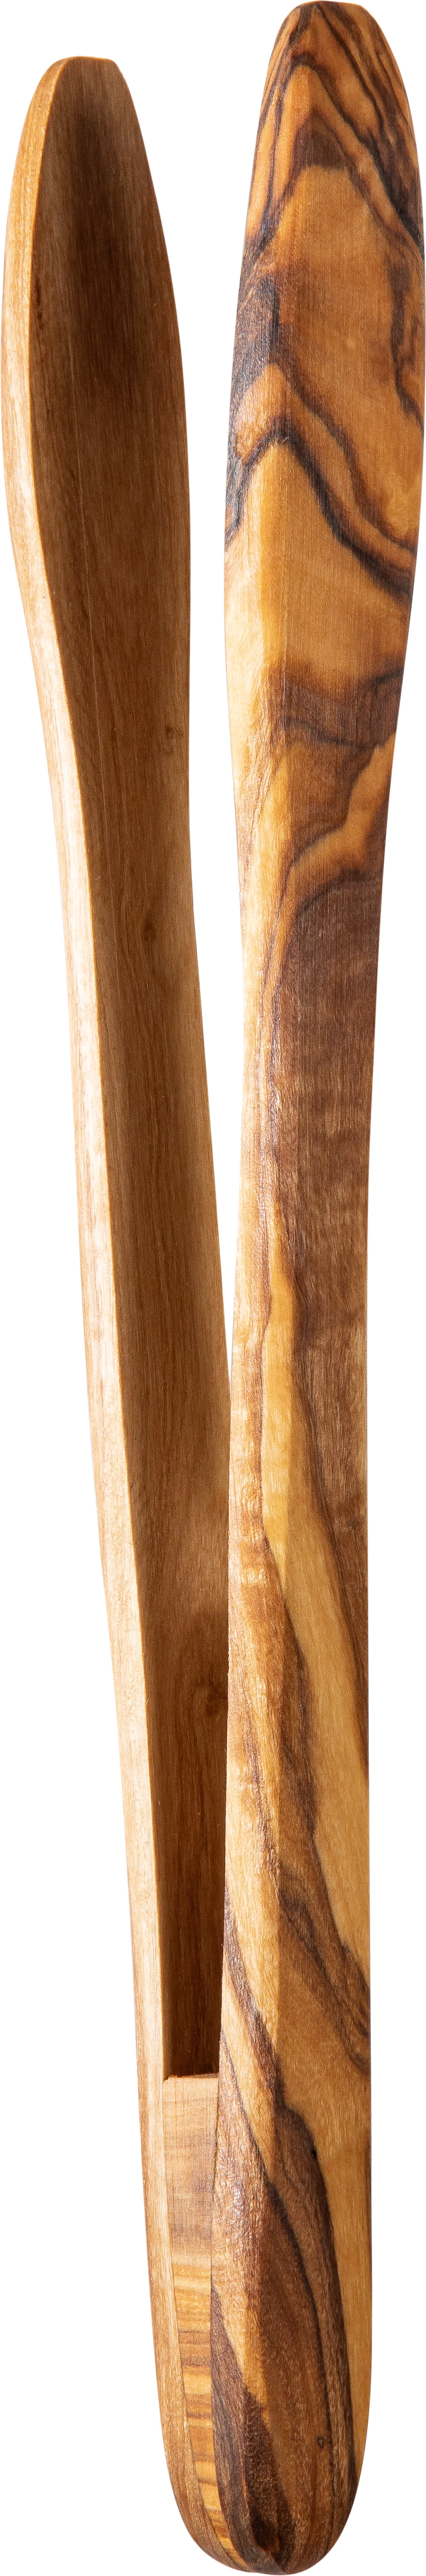 Tang, oliventræ, 27 cm